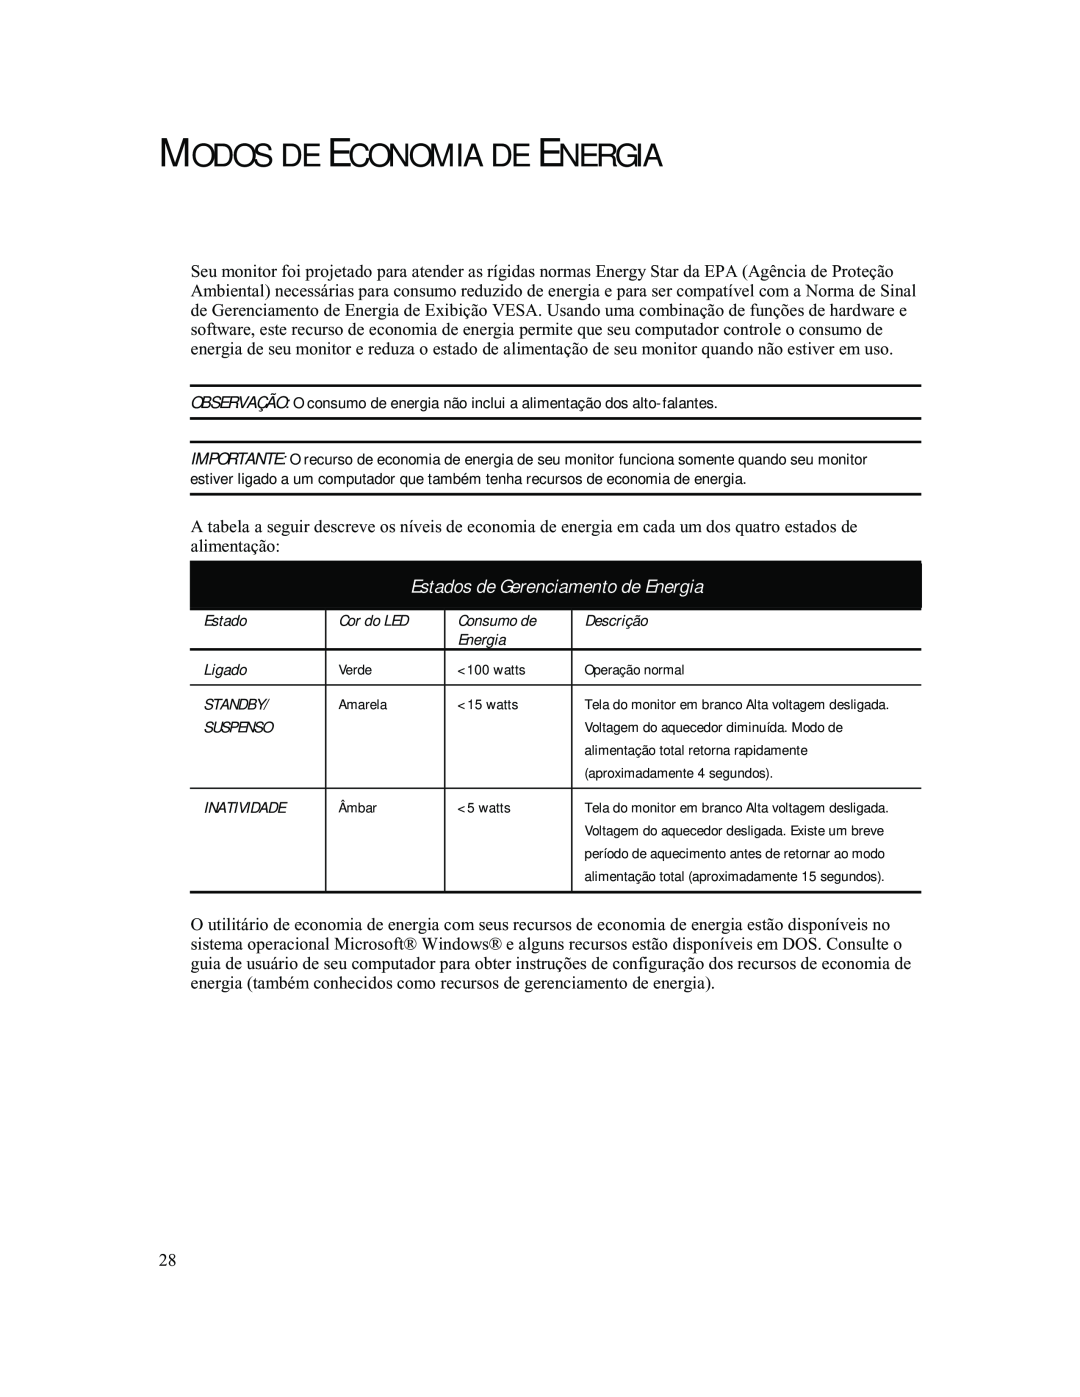 Compaq 740 manual Modos De Economia De Energia, Estados de Gerenciamento de Energia 